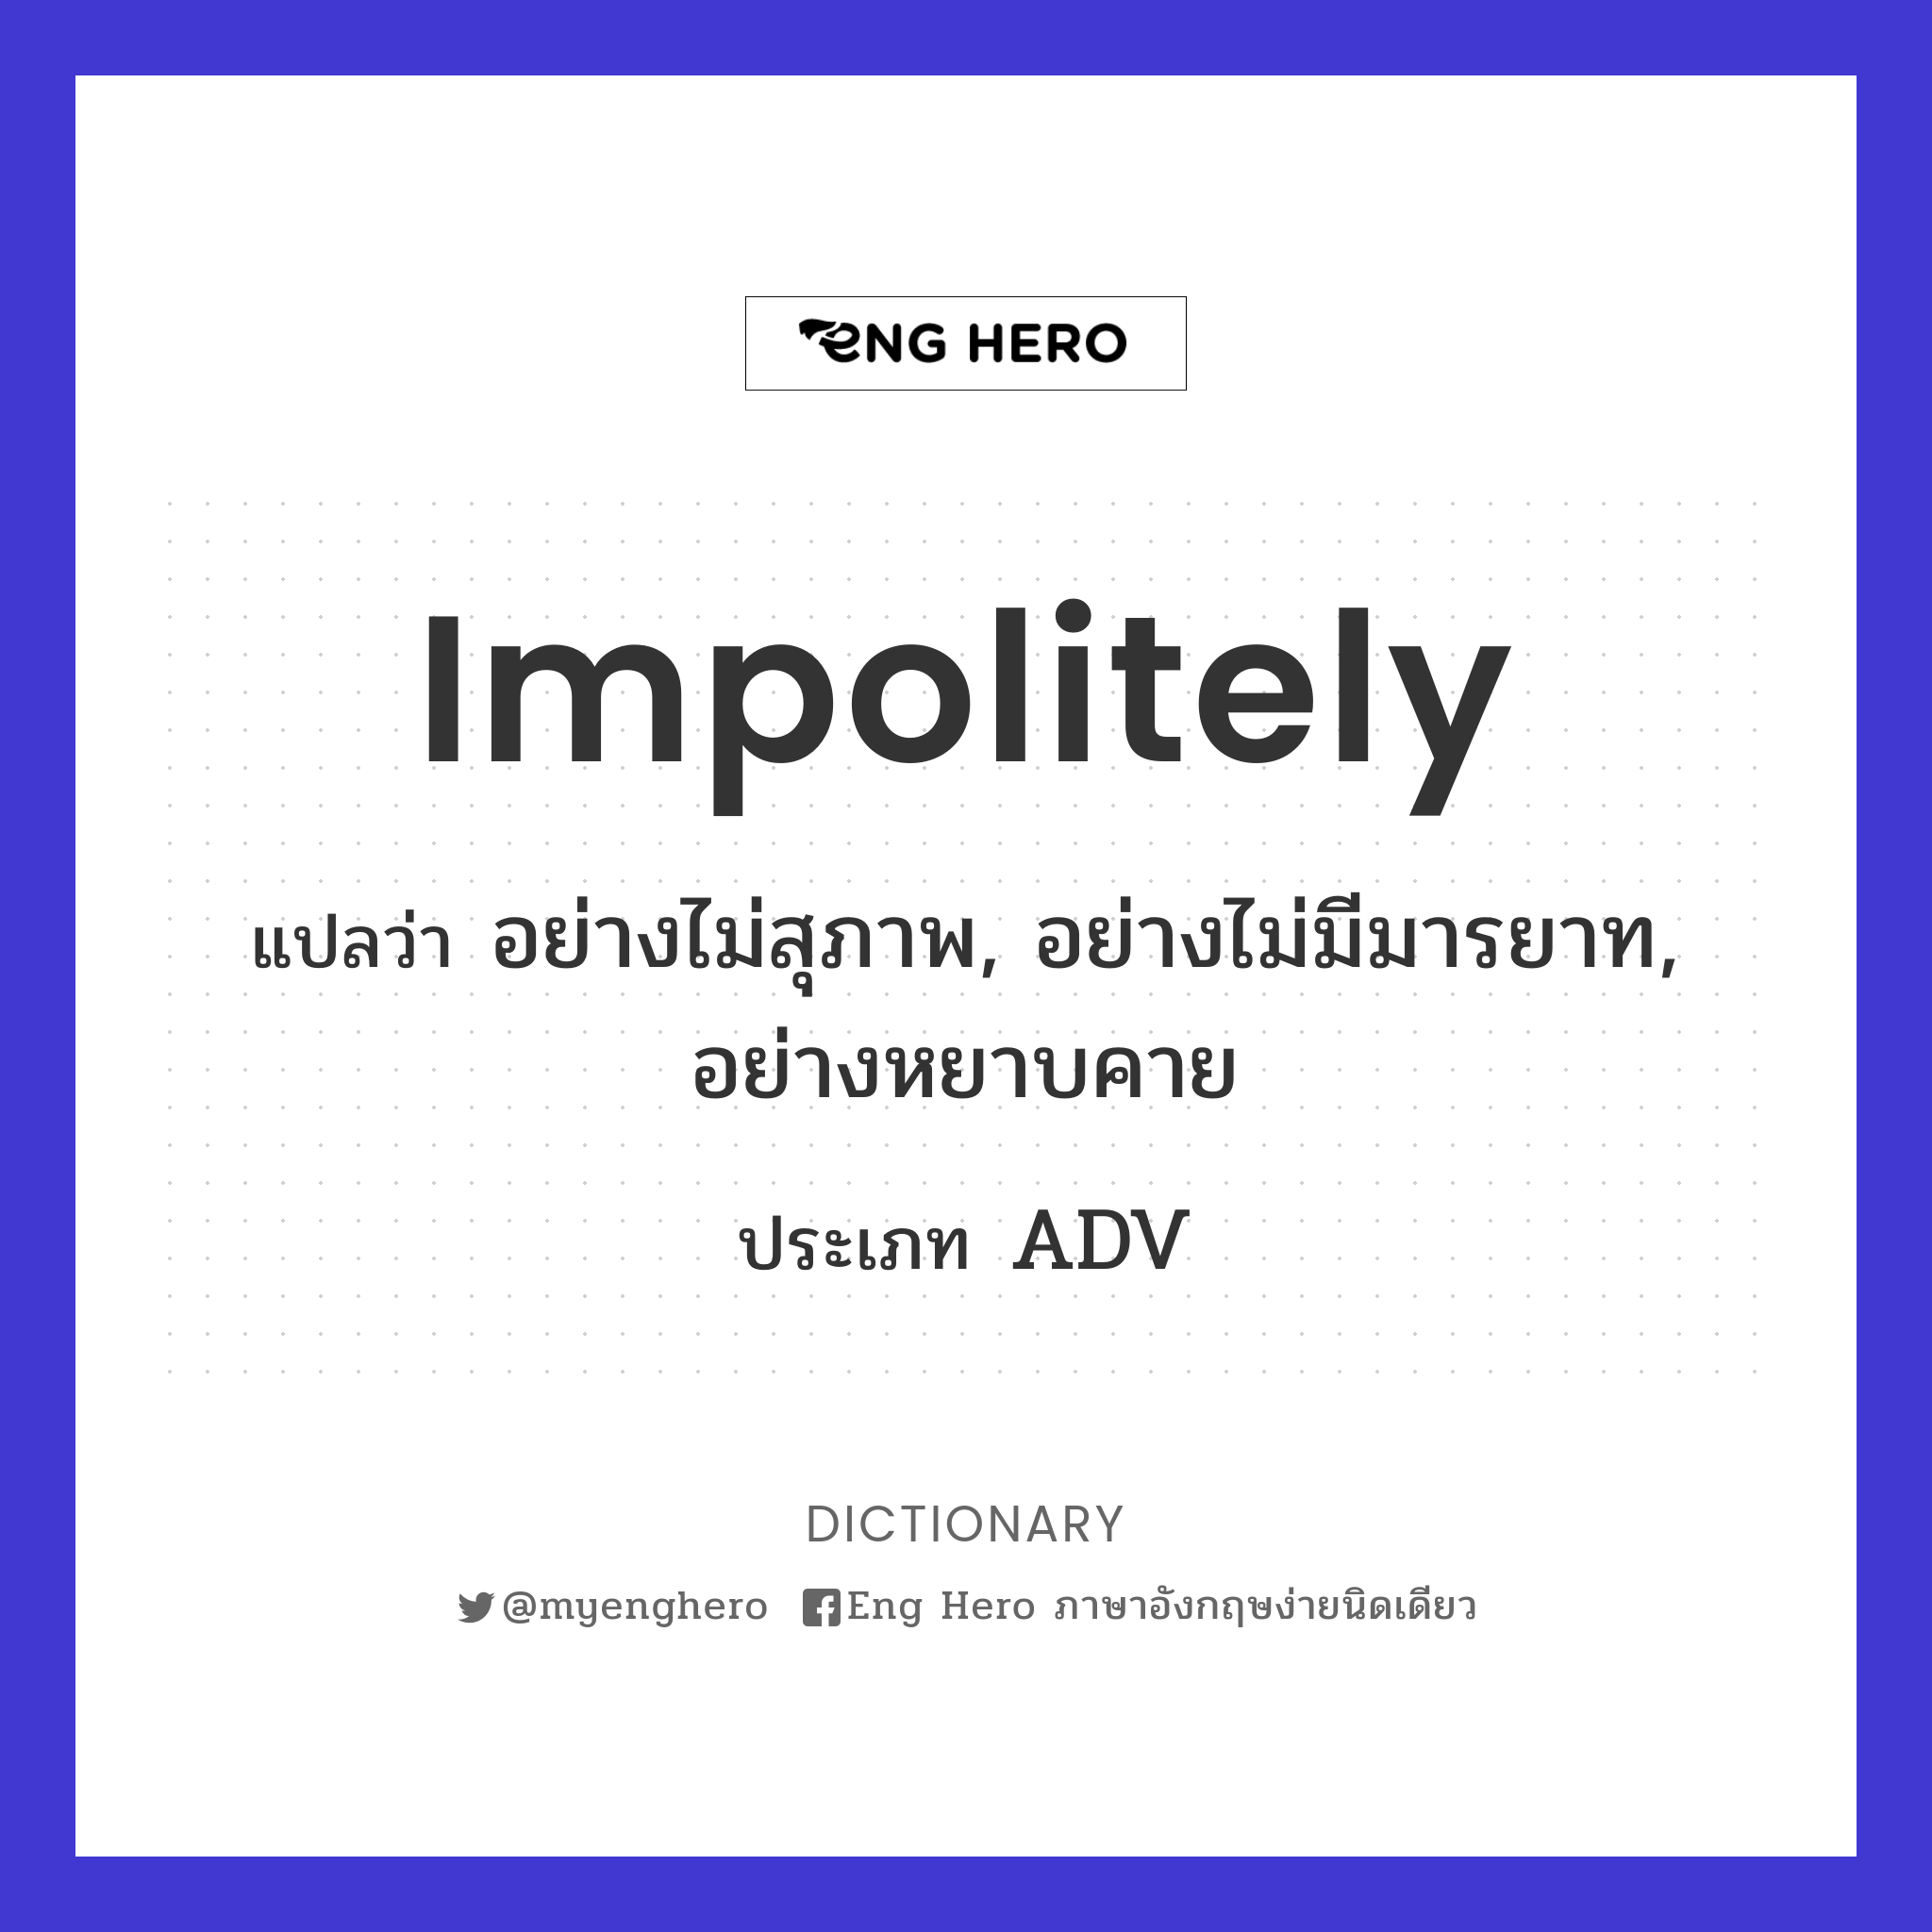 impolitely